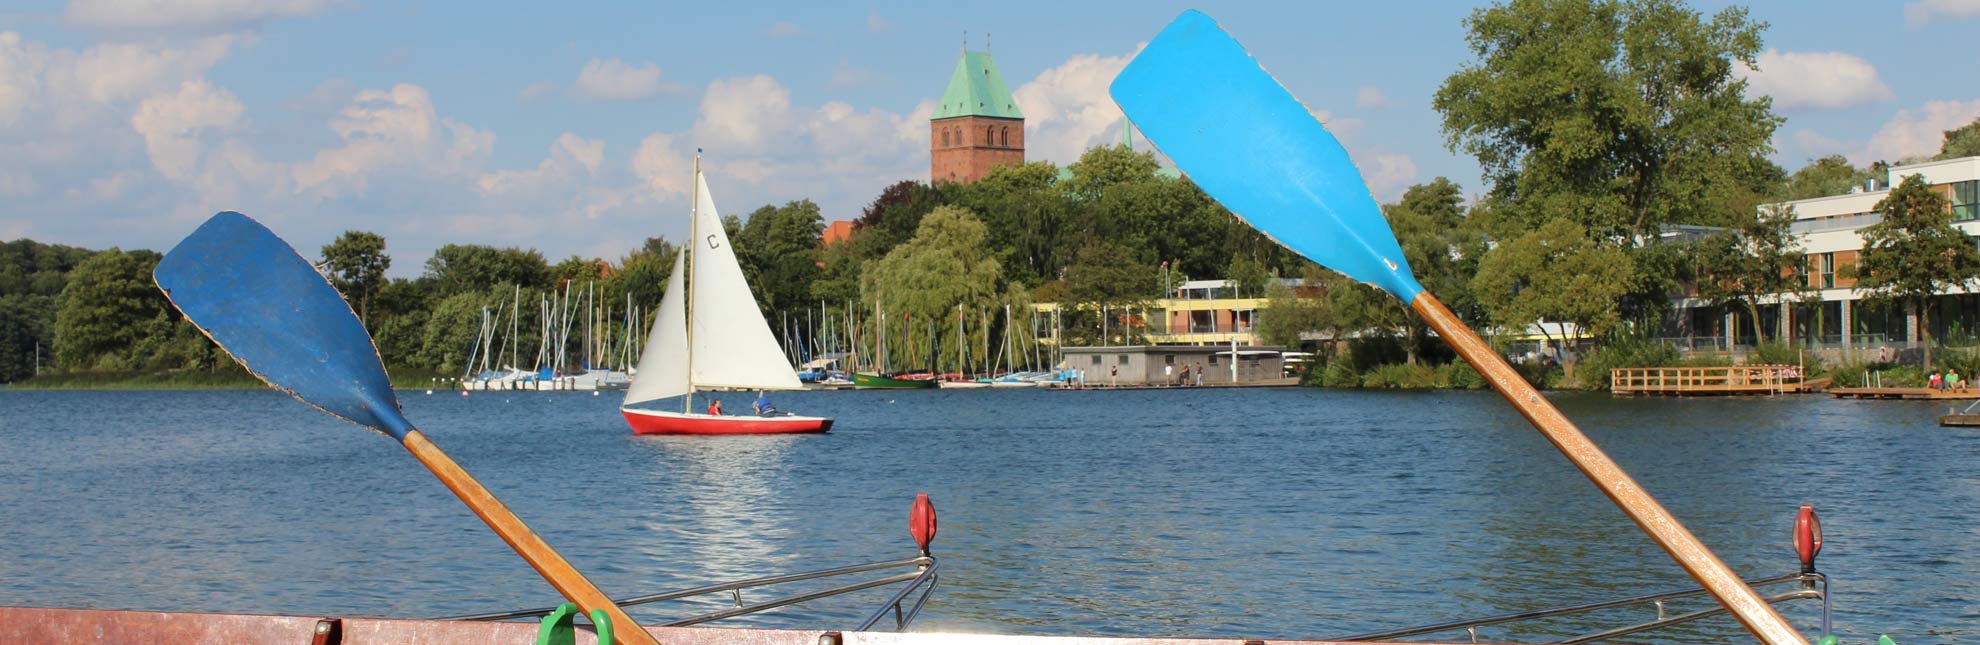 Das Rudern hat in Ratzeburg Tradition. Darüber hinaus ist der Ratzeburger See ein beliebtes Binnensegelrevier., © Carina Jahnke / HLMS GmbH